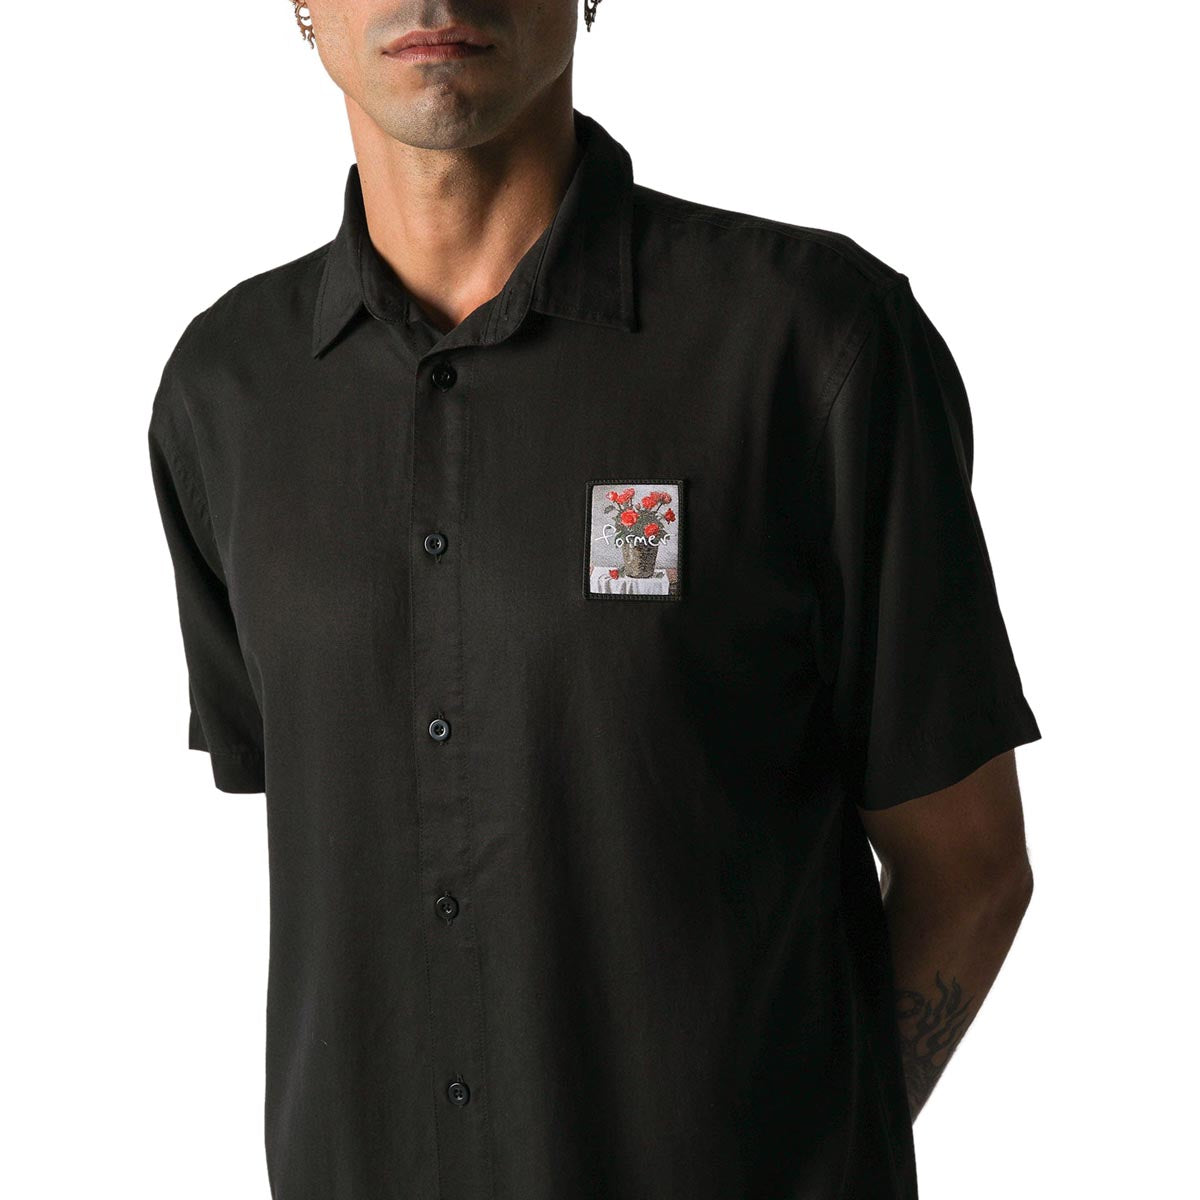 Former Vivian Still Life Shirt - Black image 3